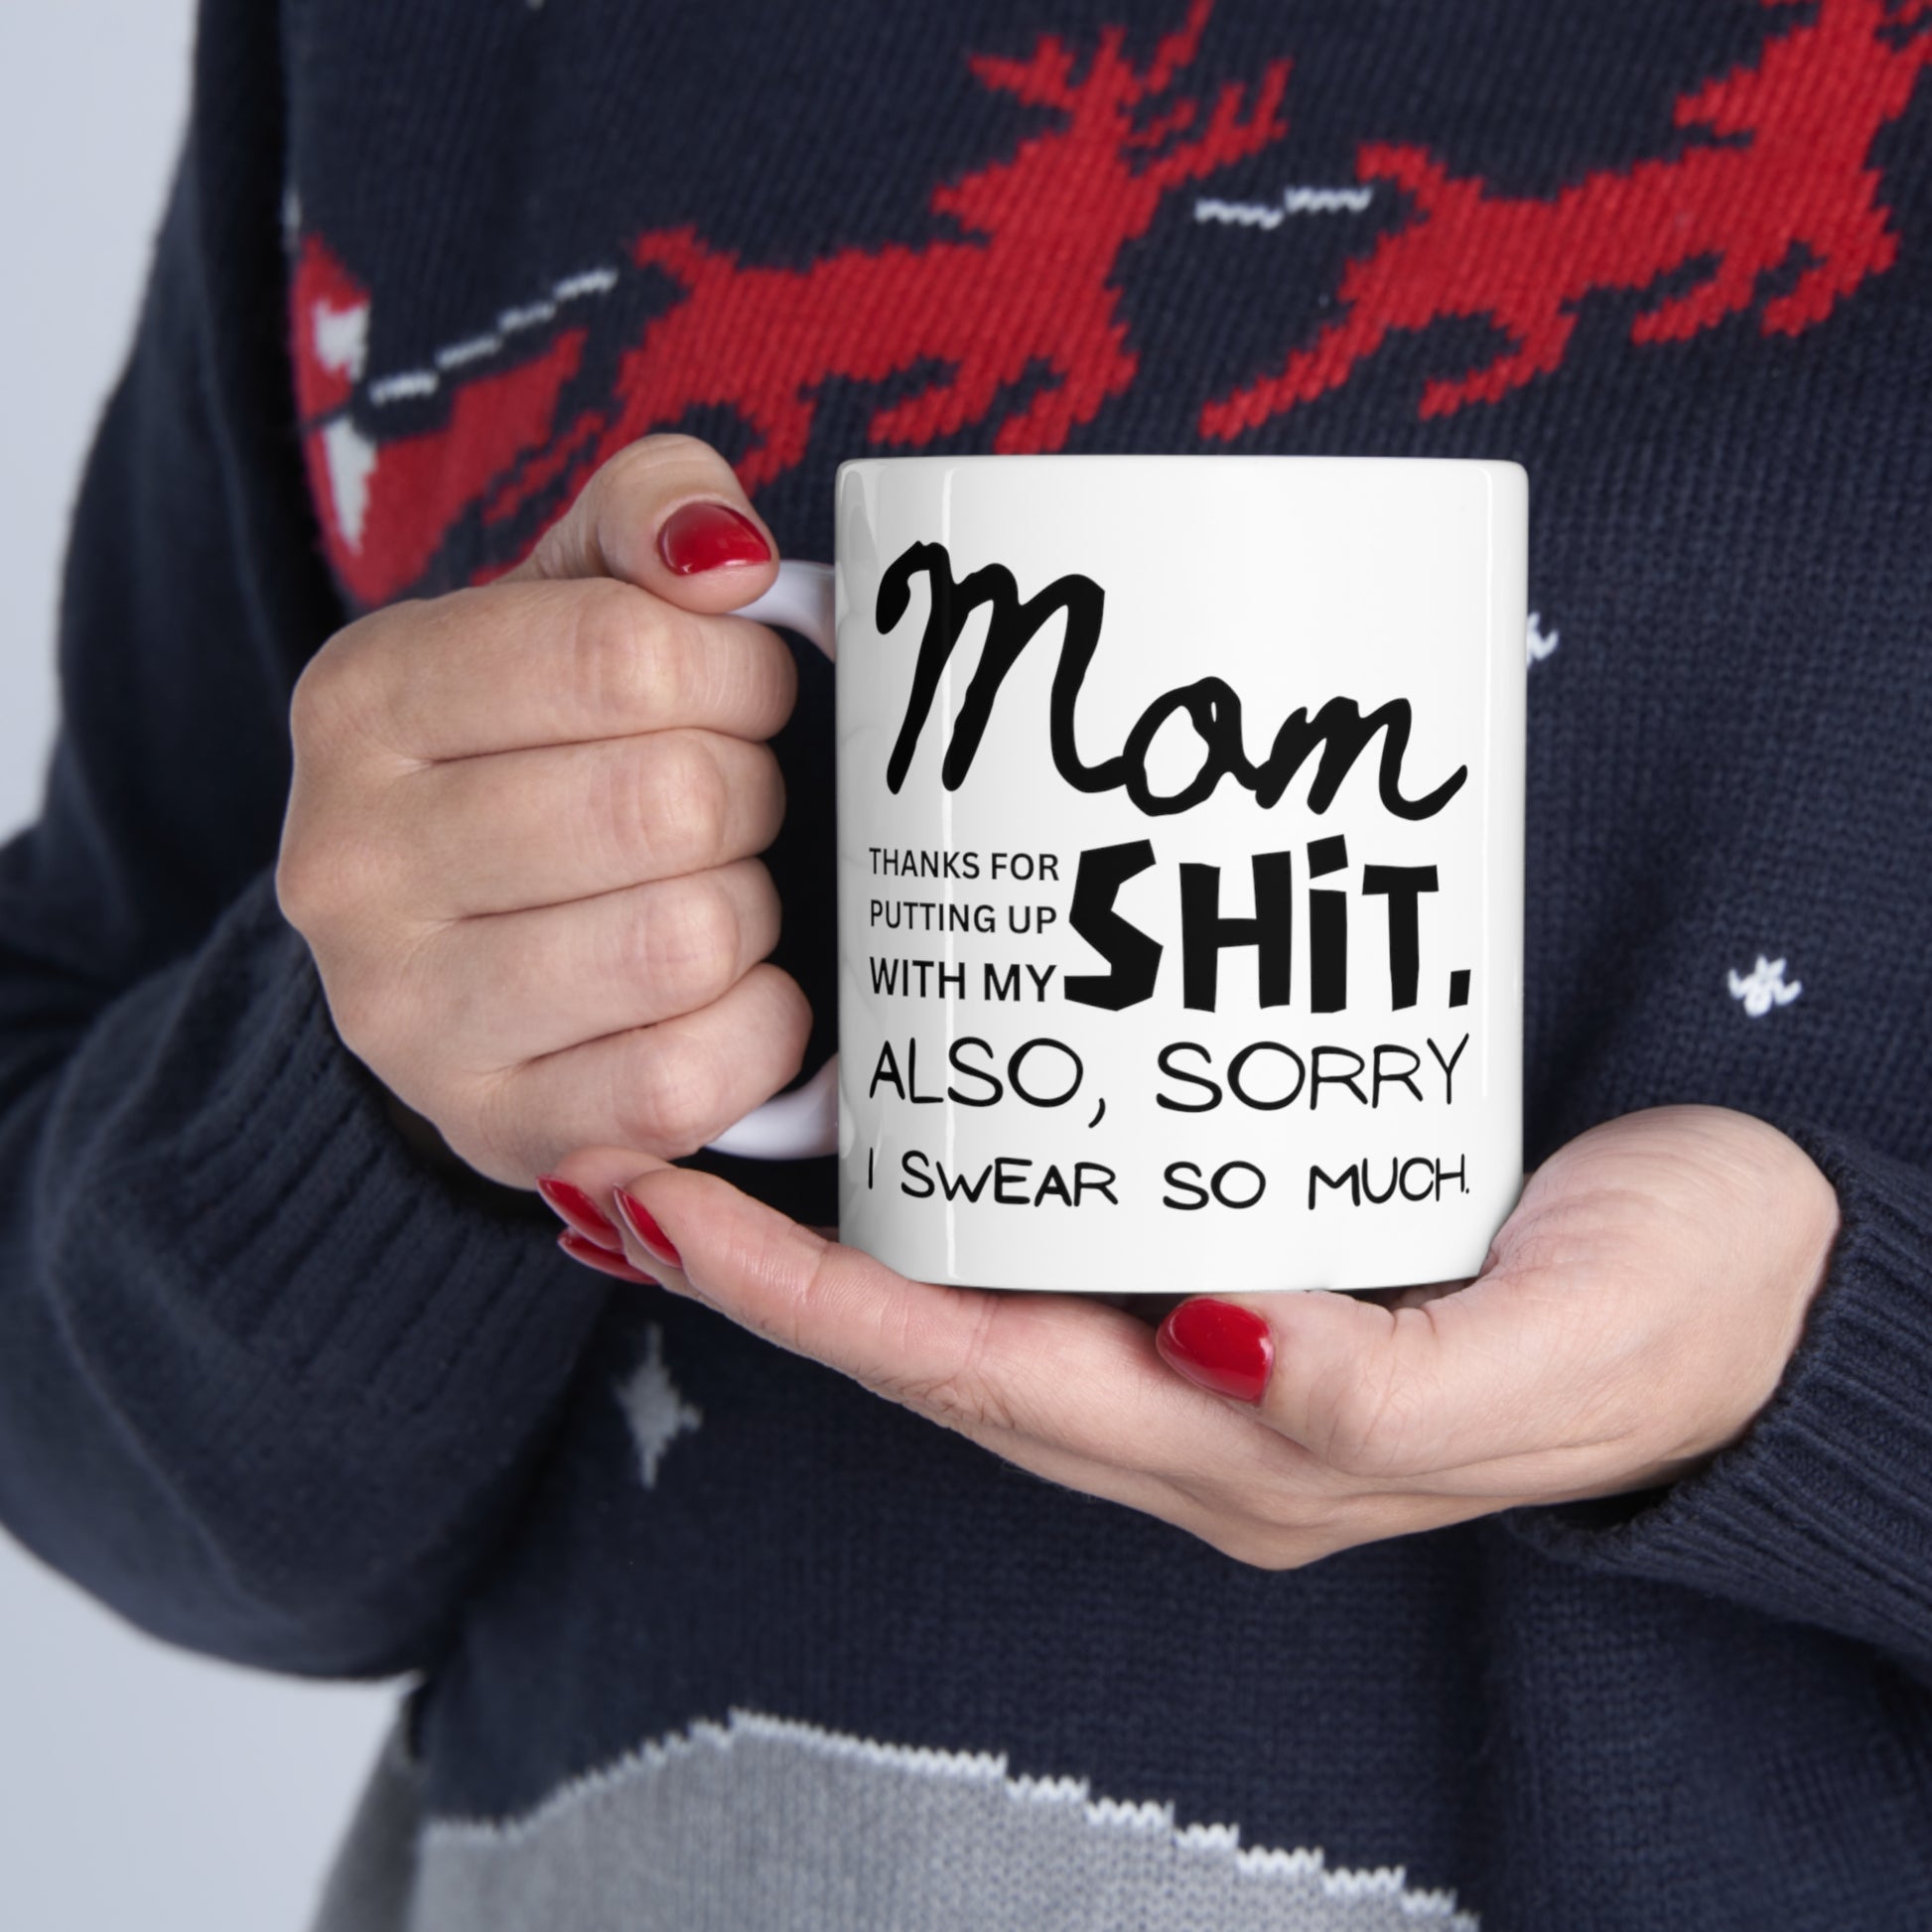 Funny Coffee Mug for Mom, Sorry I Swear So Much Ceramic Mug 11oz